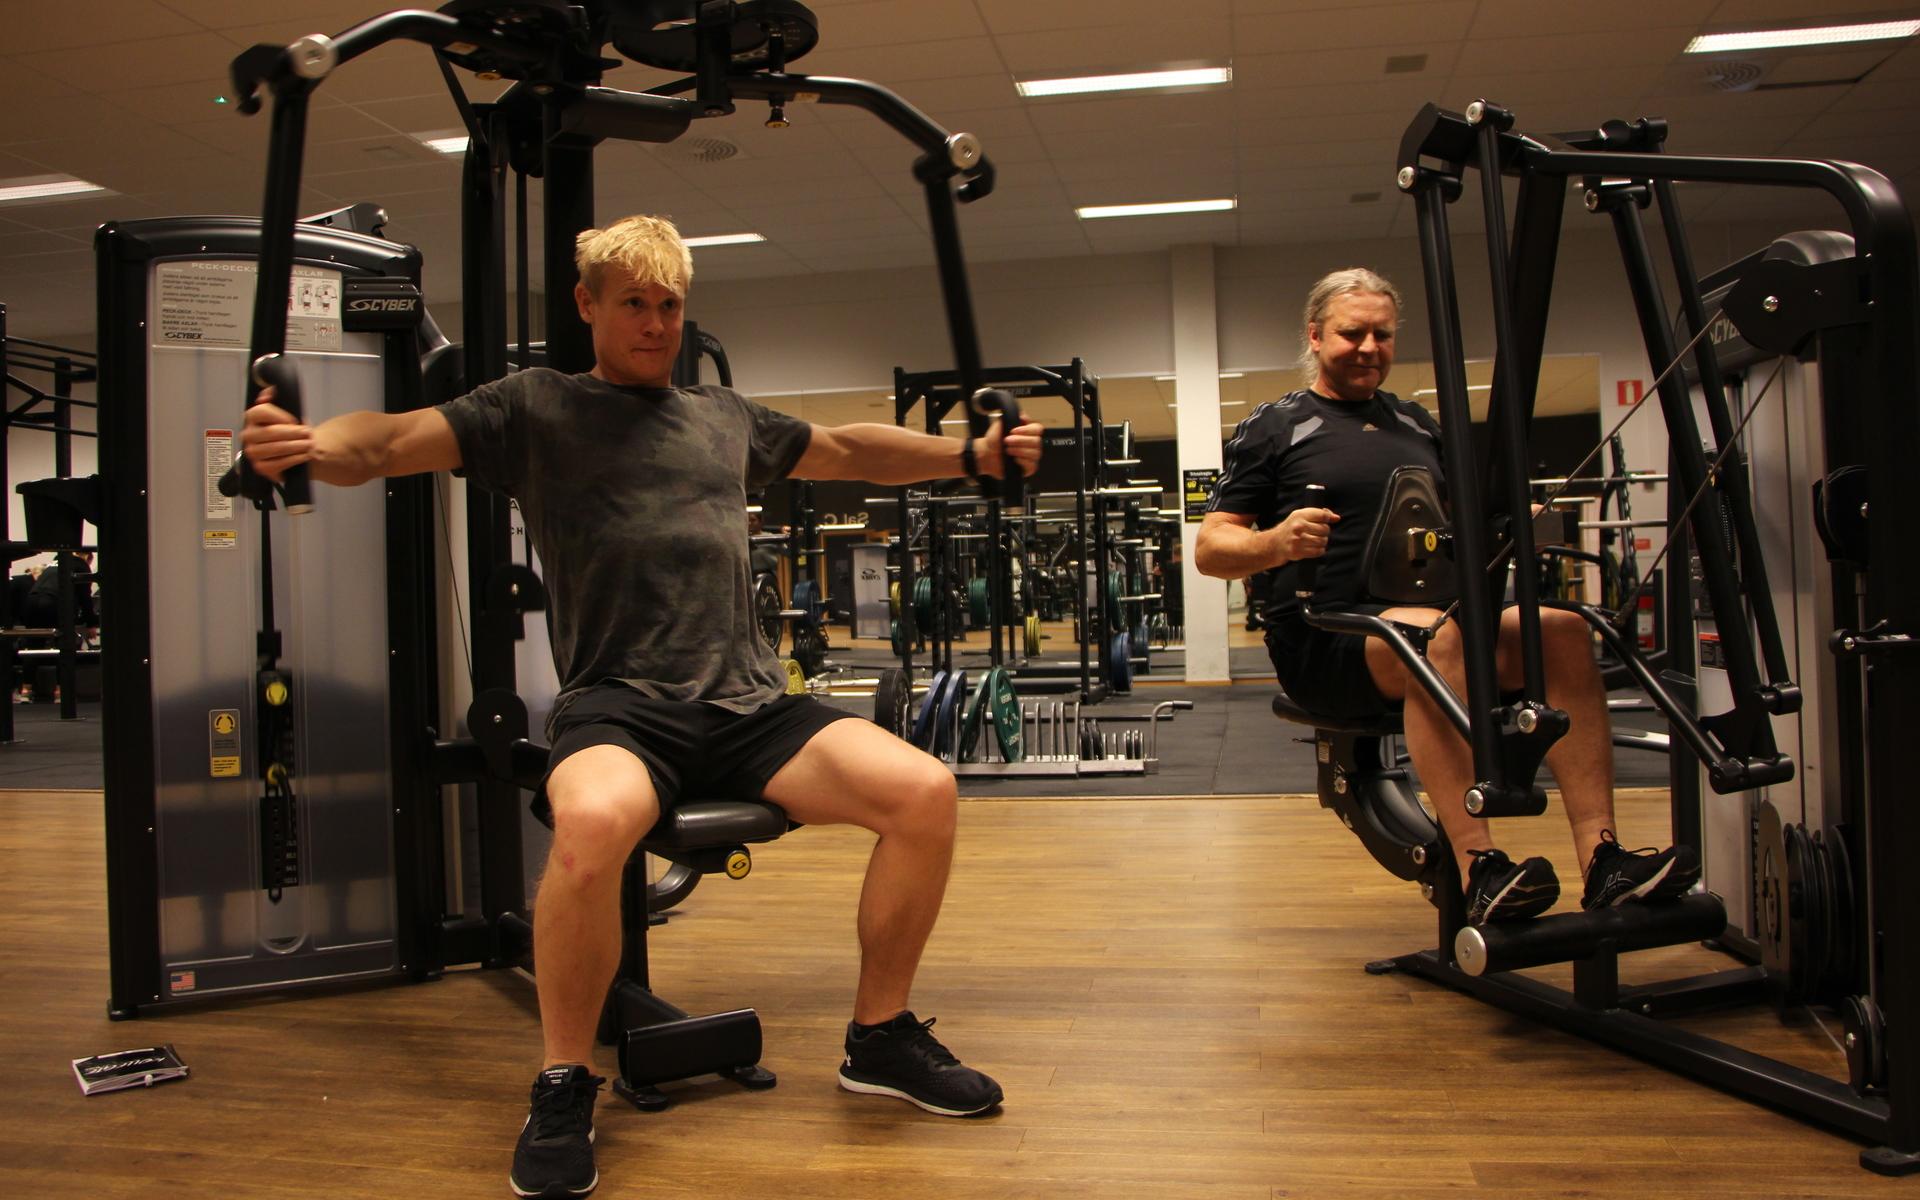 Dennis Möller och Ulf Bernhardsson tränar ihop på STC gym i Stenungsund. De är glada över att få träna tillsammans igen efter att restriktionerna lyftes.